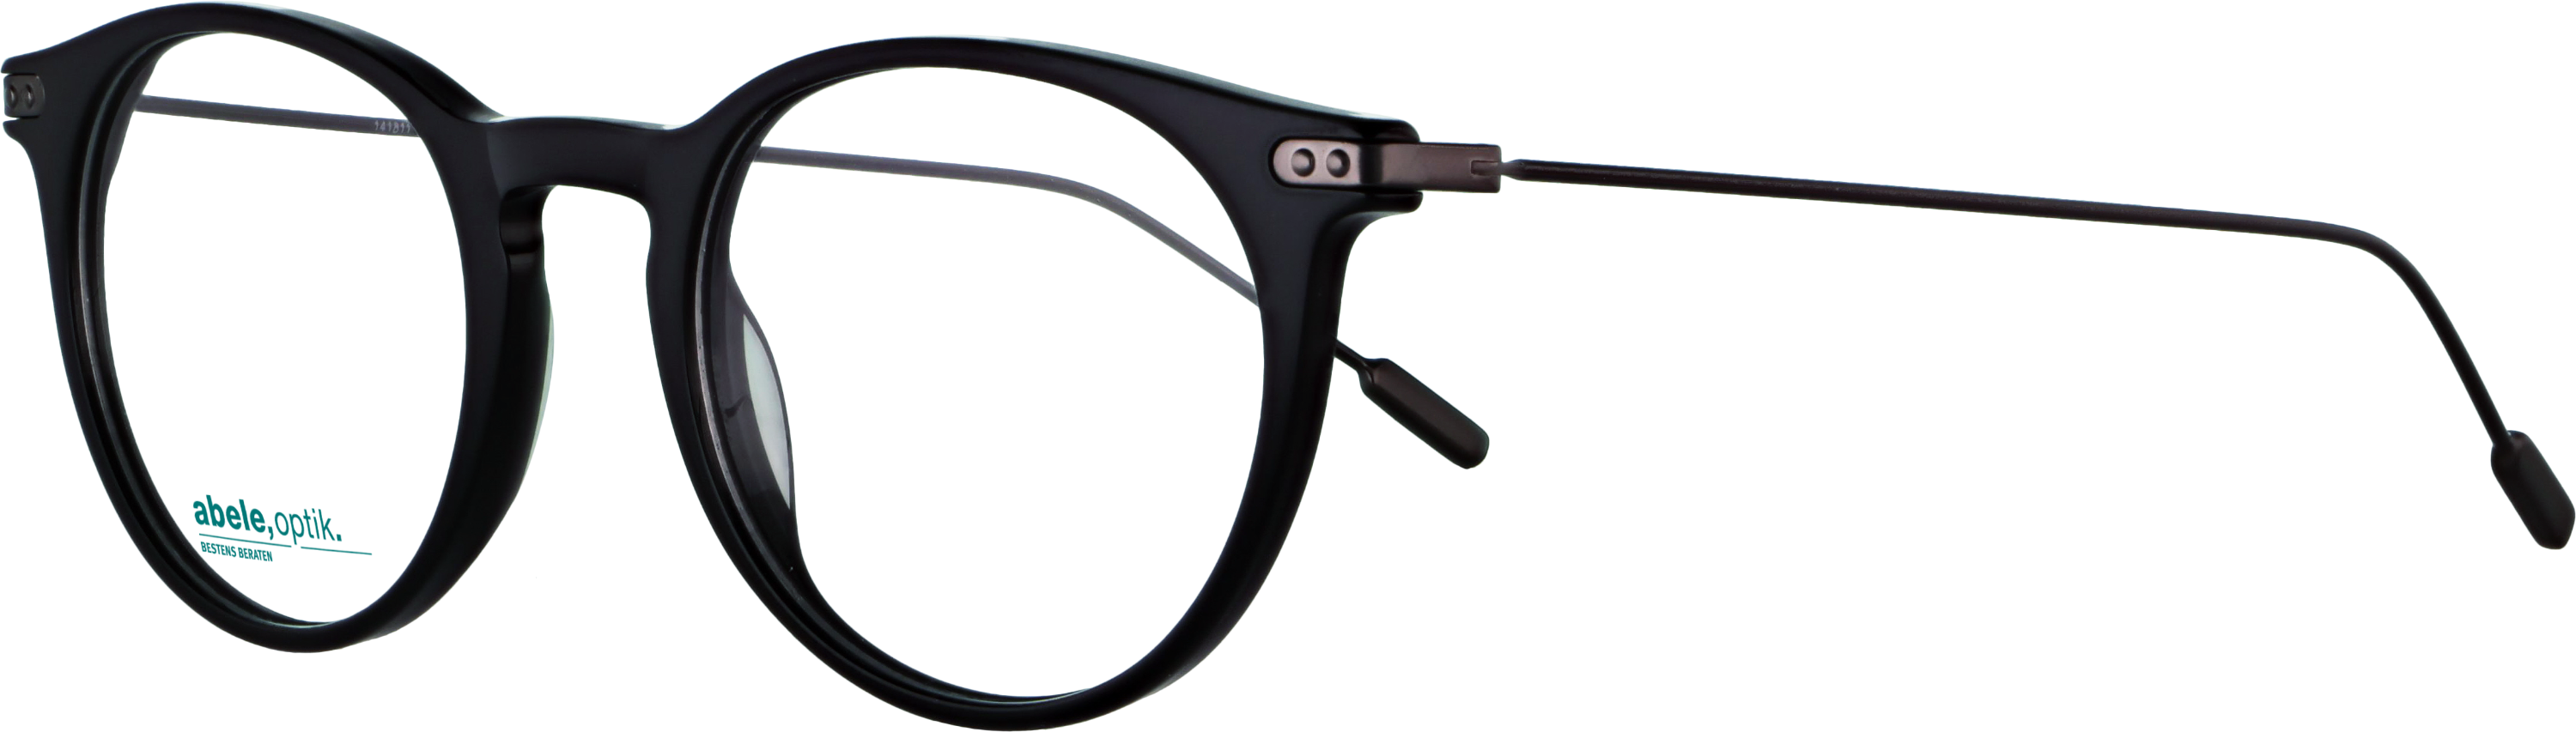 Das Bild zeigt die Korrektionsbrille 141811 von der Marke Abele Optik in schwarz / Bügel: gun dunkel.